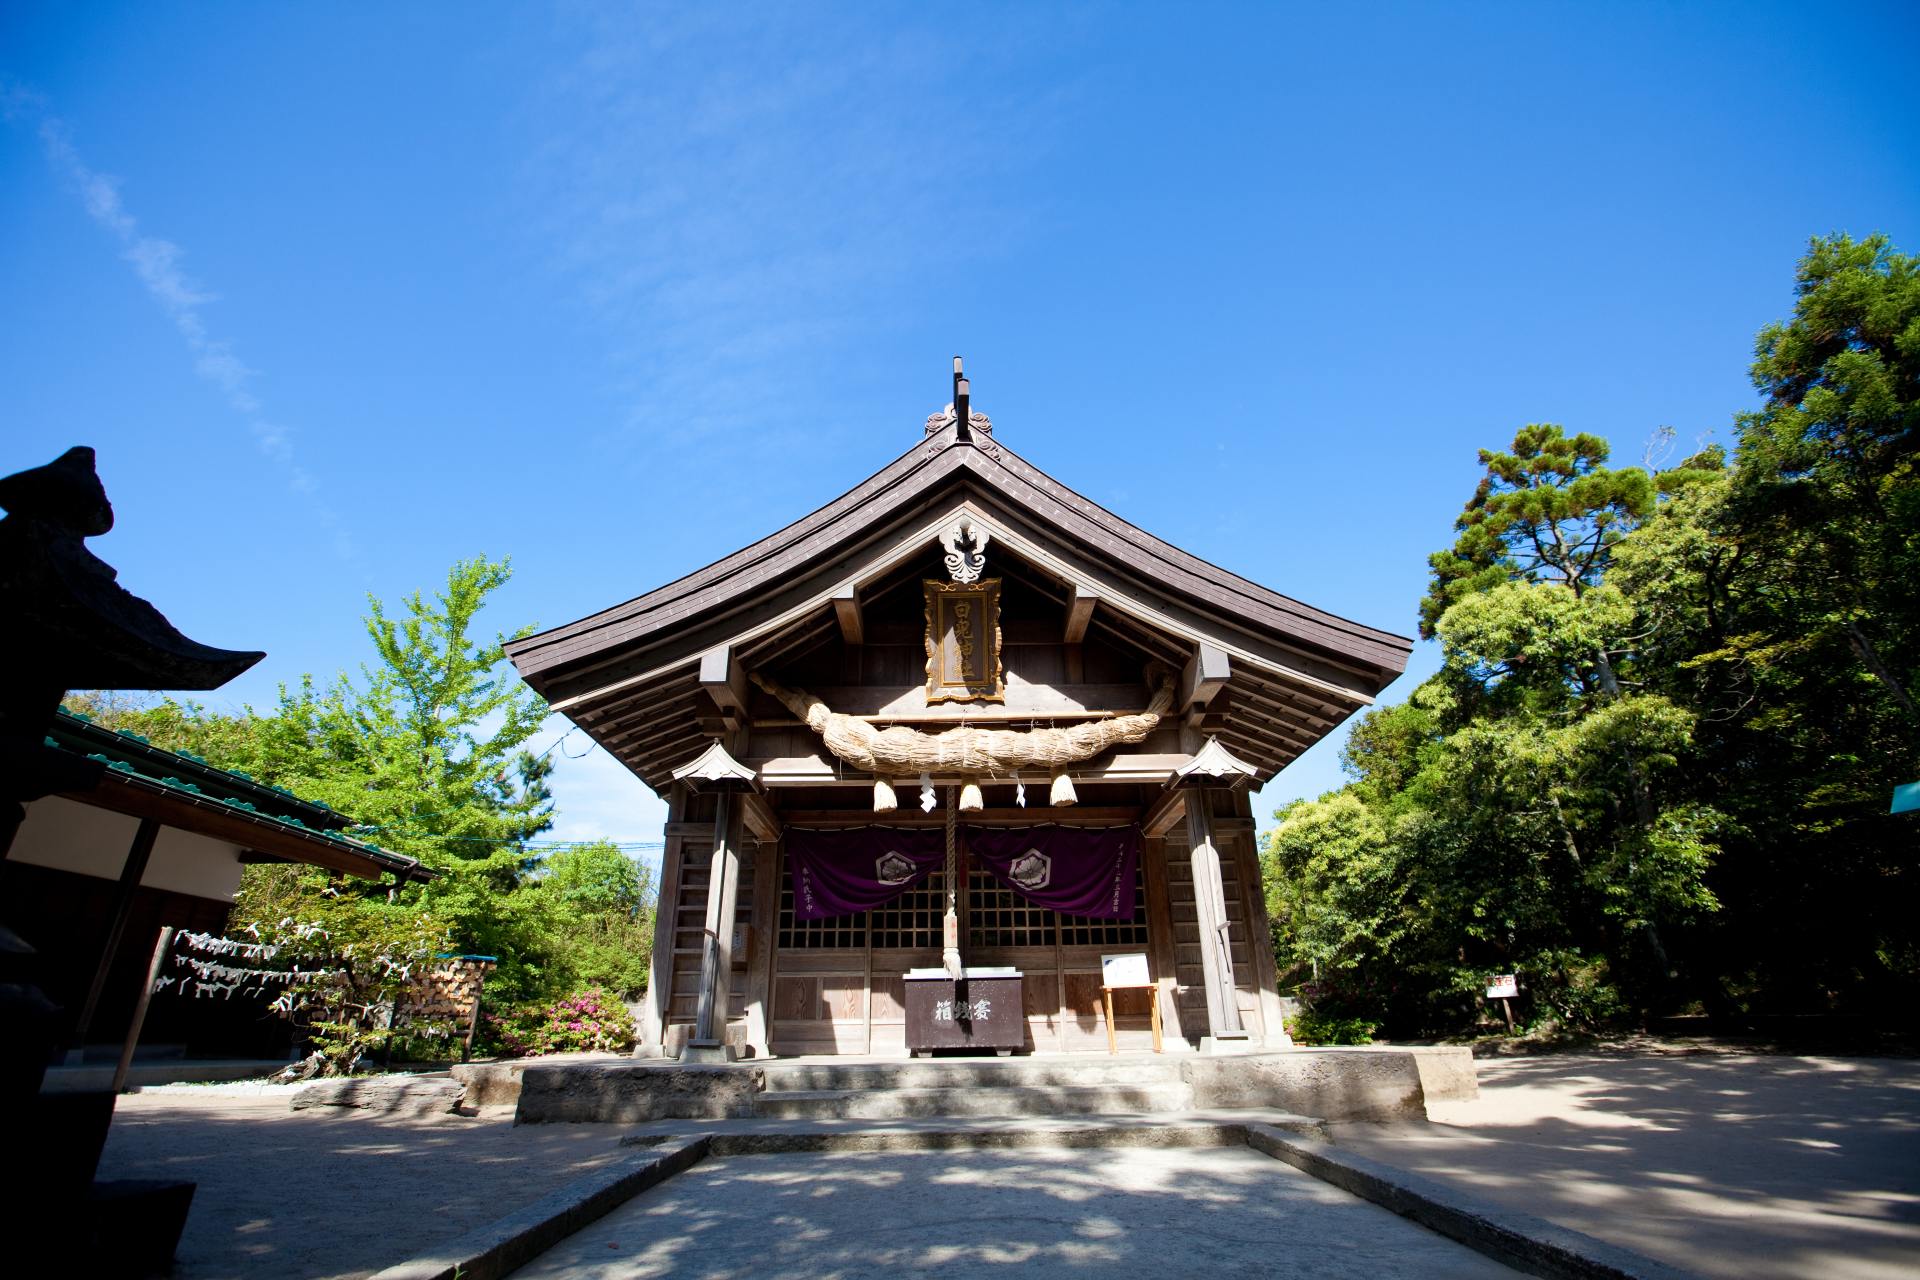 Hakuto Shrine, le lieu de prédilection pour la romance, se trouve à quelques pas de la plage de Hakuto.